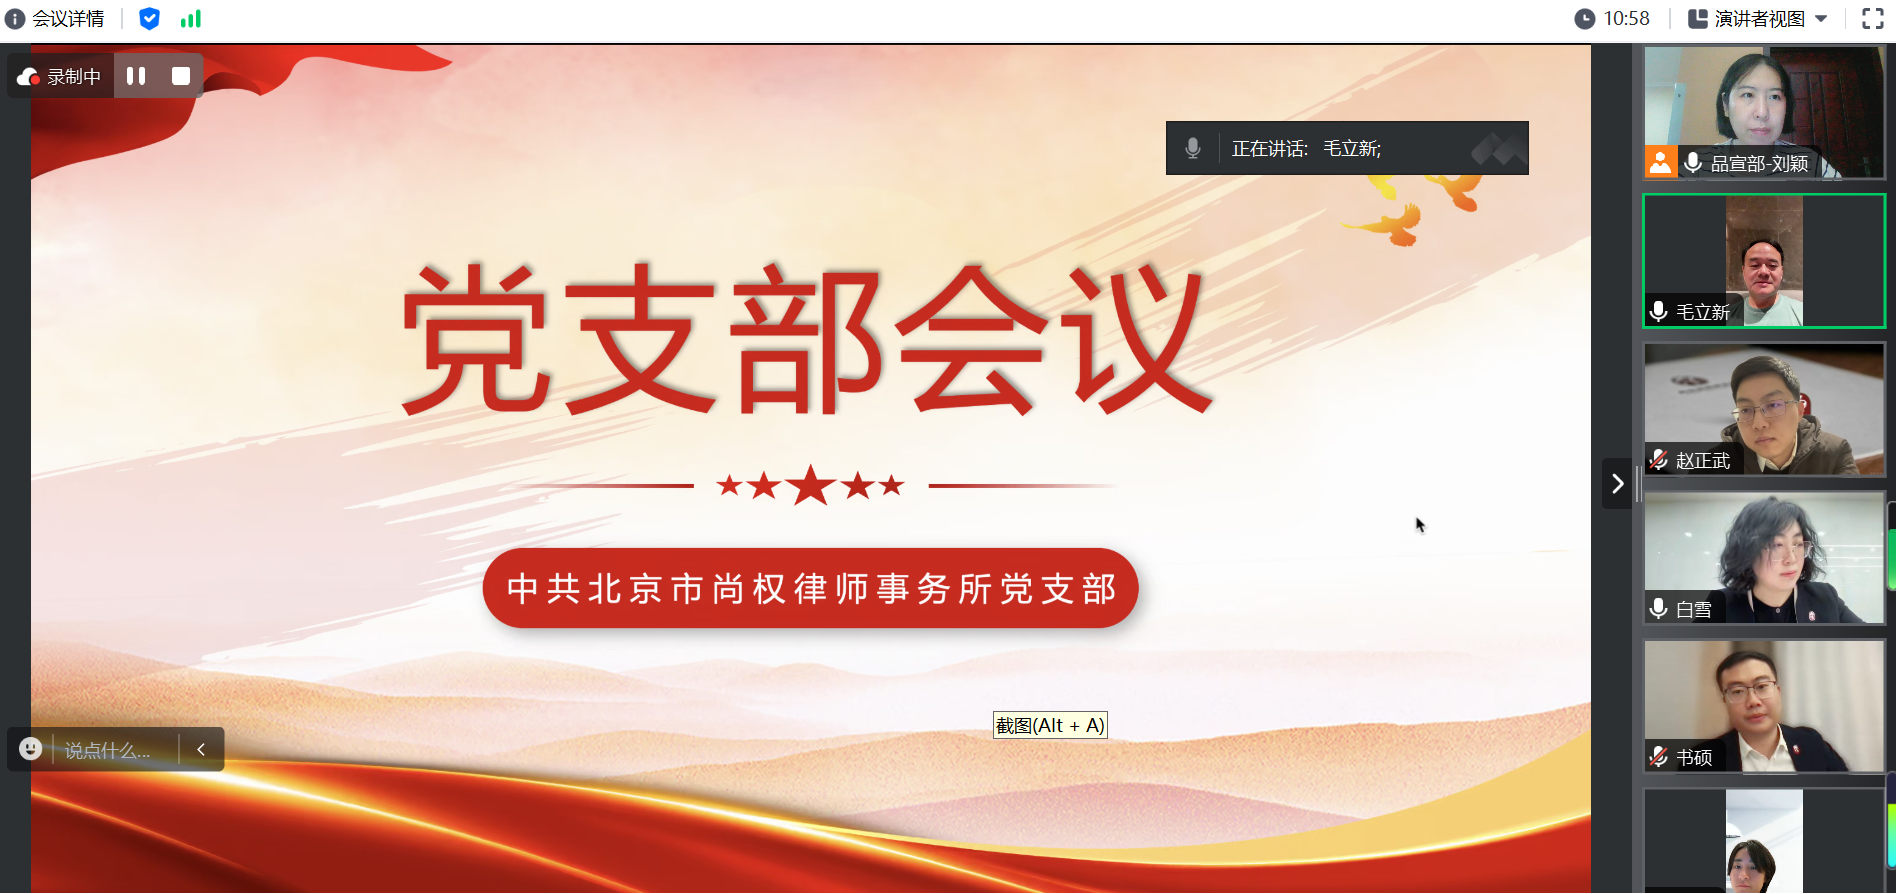 中共北京市尚权律师事务所党支部组织召开党支部主题教育活动